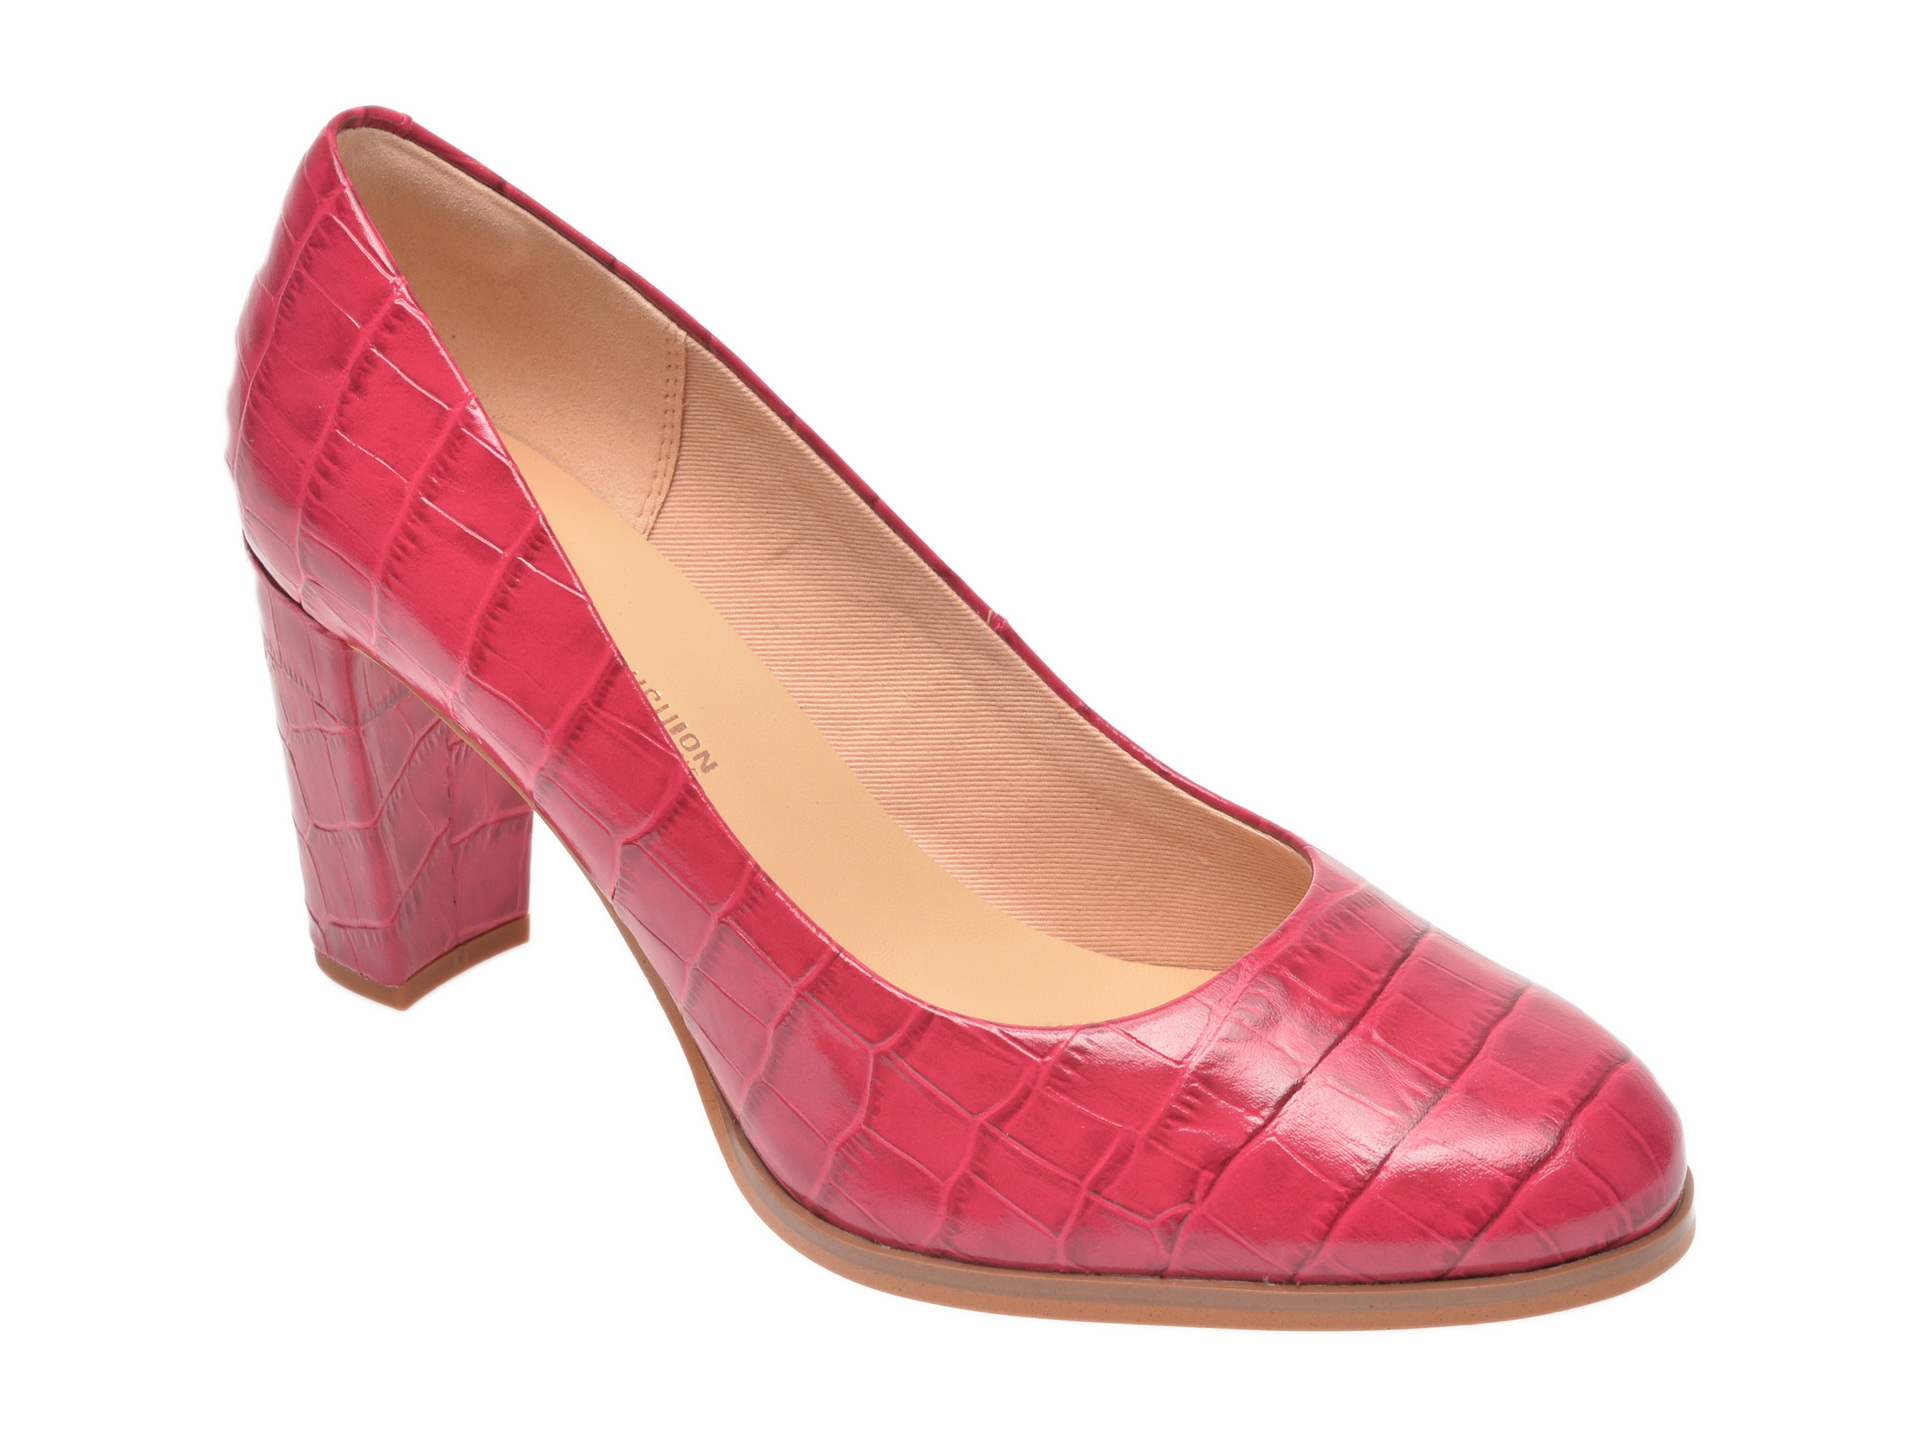 Pantofi CLARKS roz, Kaylin Cara, din piele naturala